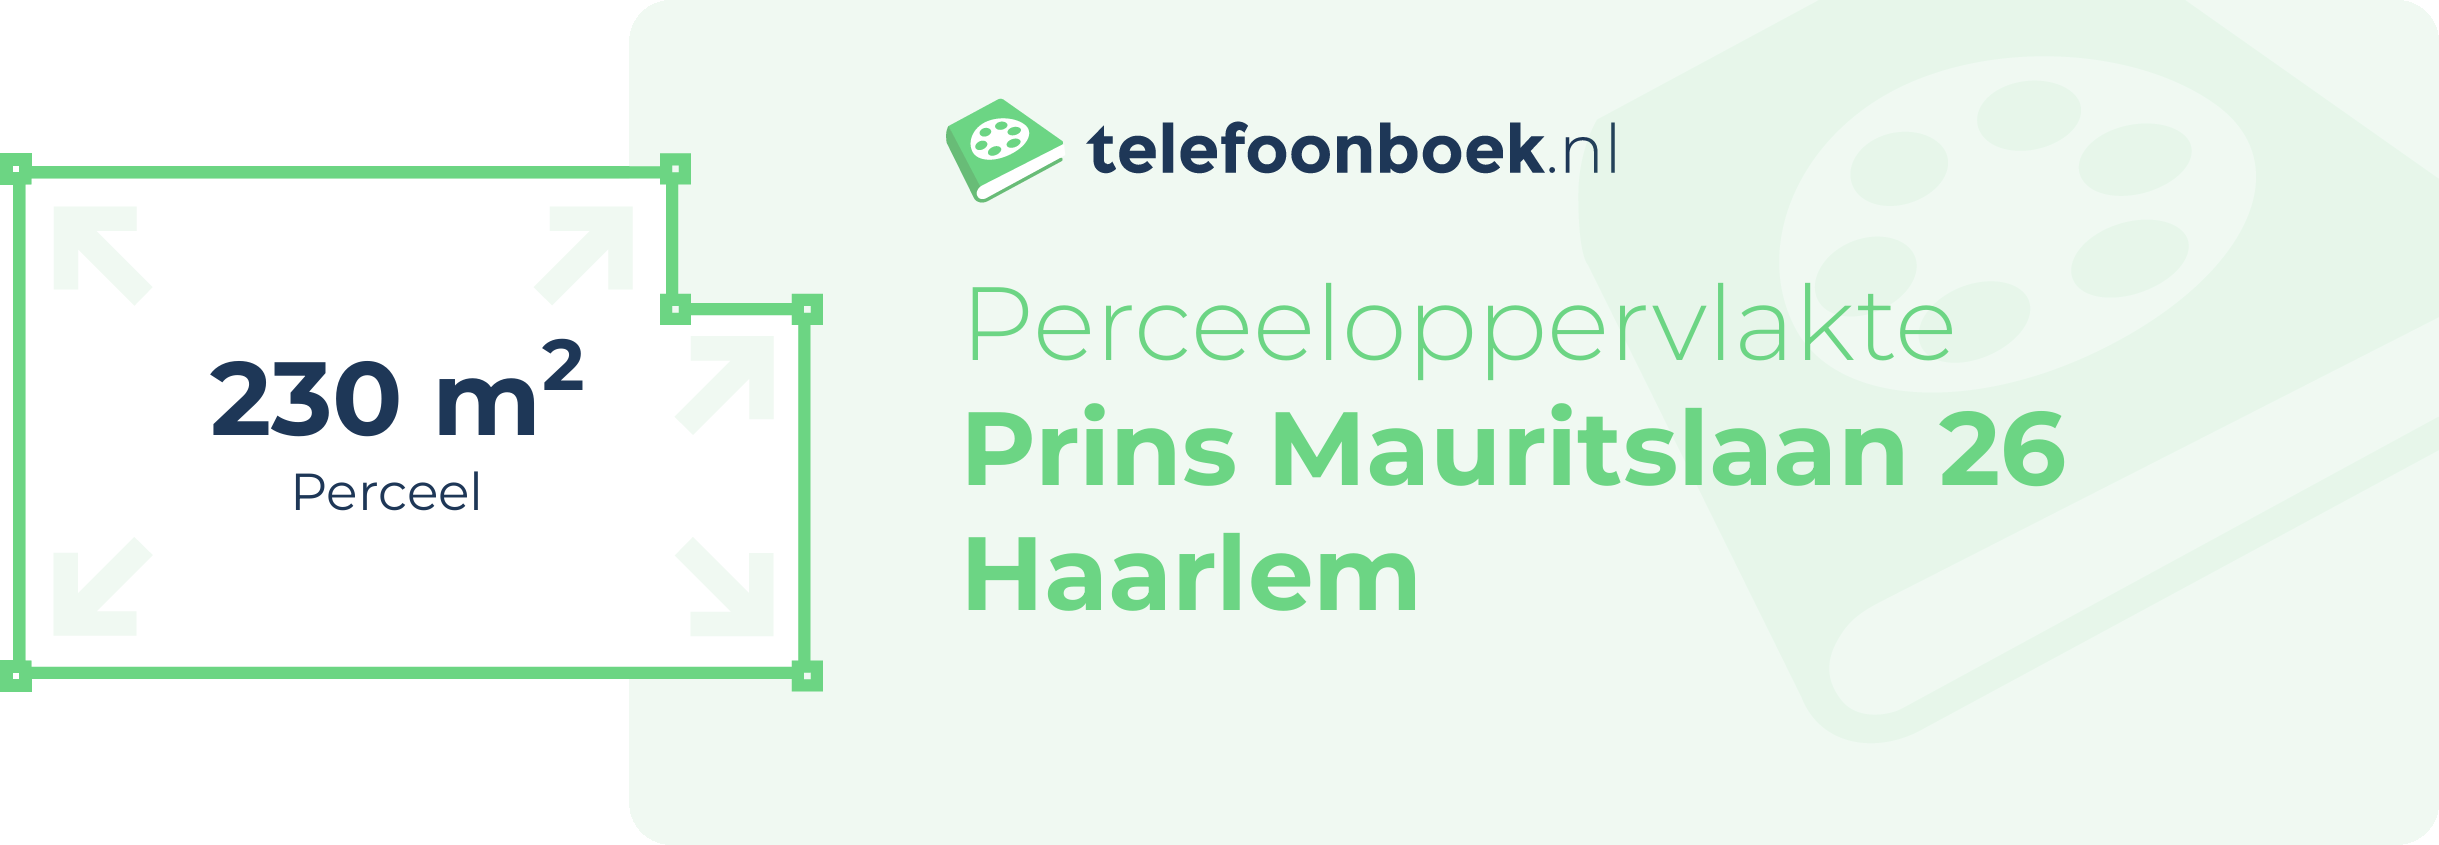 Perceeloppervlakte Prins Mauritslaan 26 Haarlem